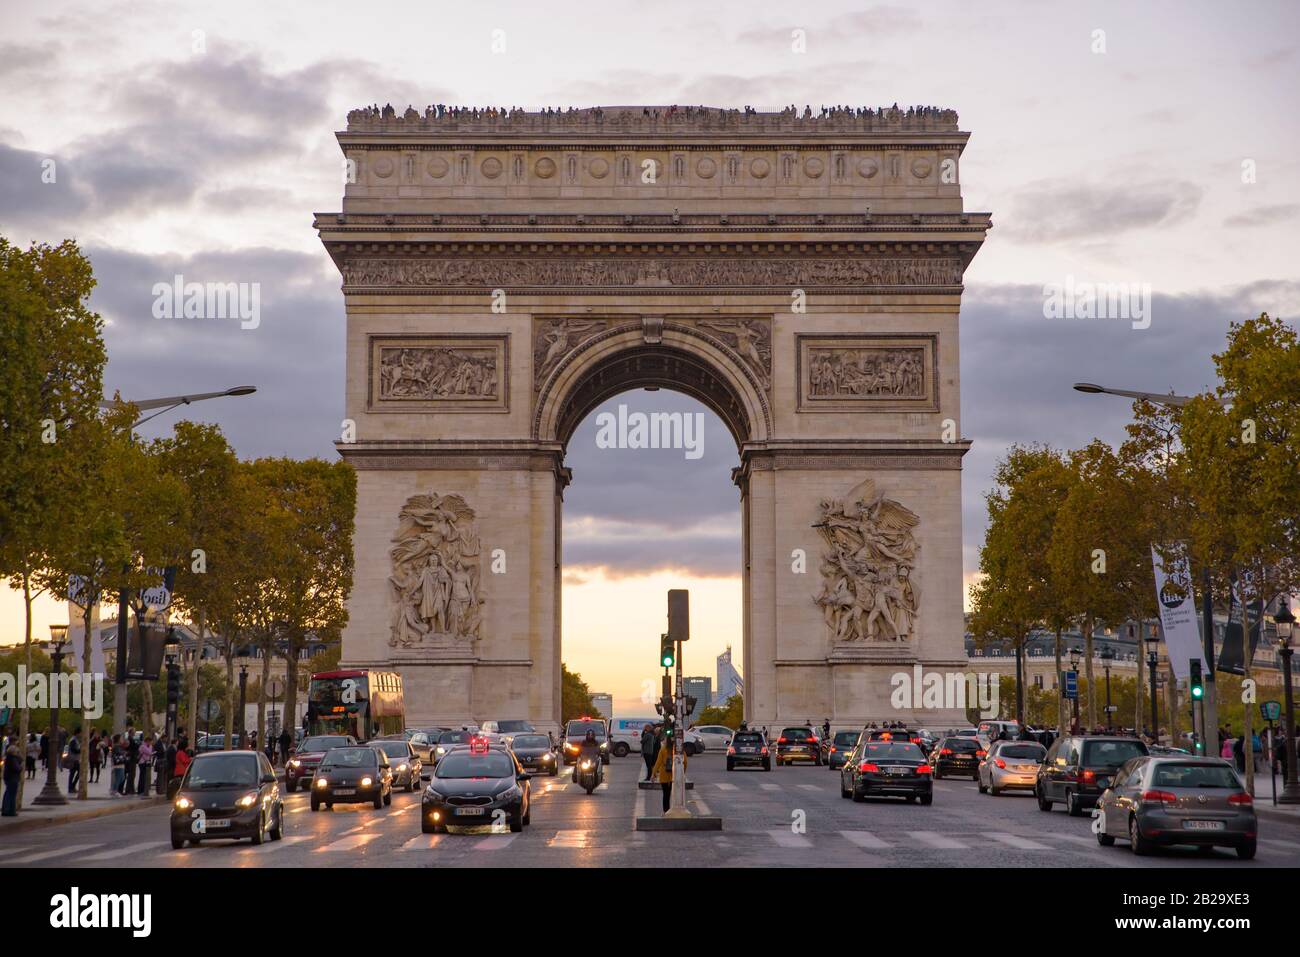 El tráfico al atardecer frente al Arco del Triunfo, uno de los monumentos más famosos de París, Francia Foto de stock